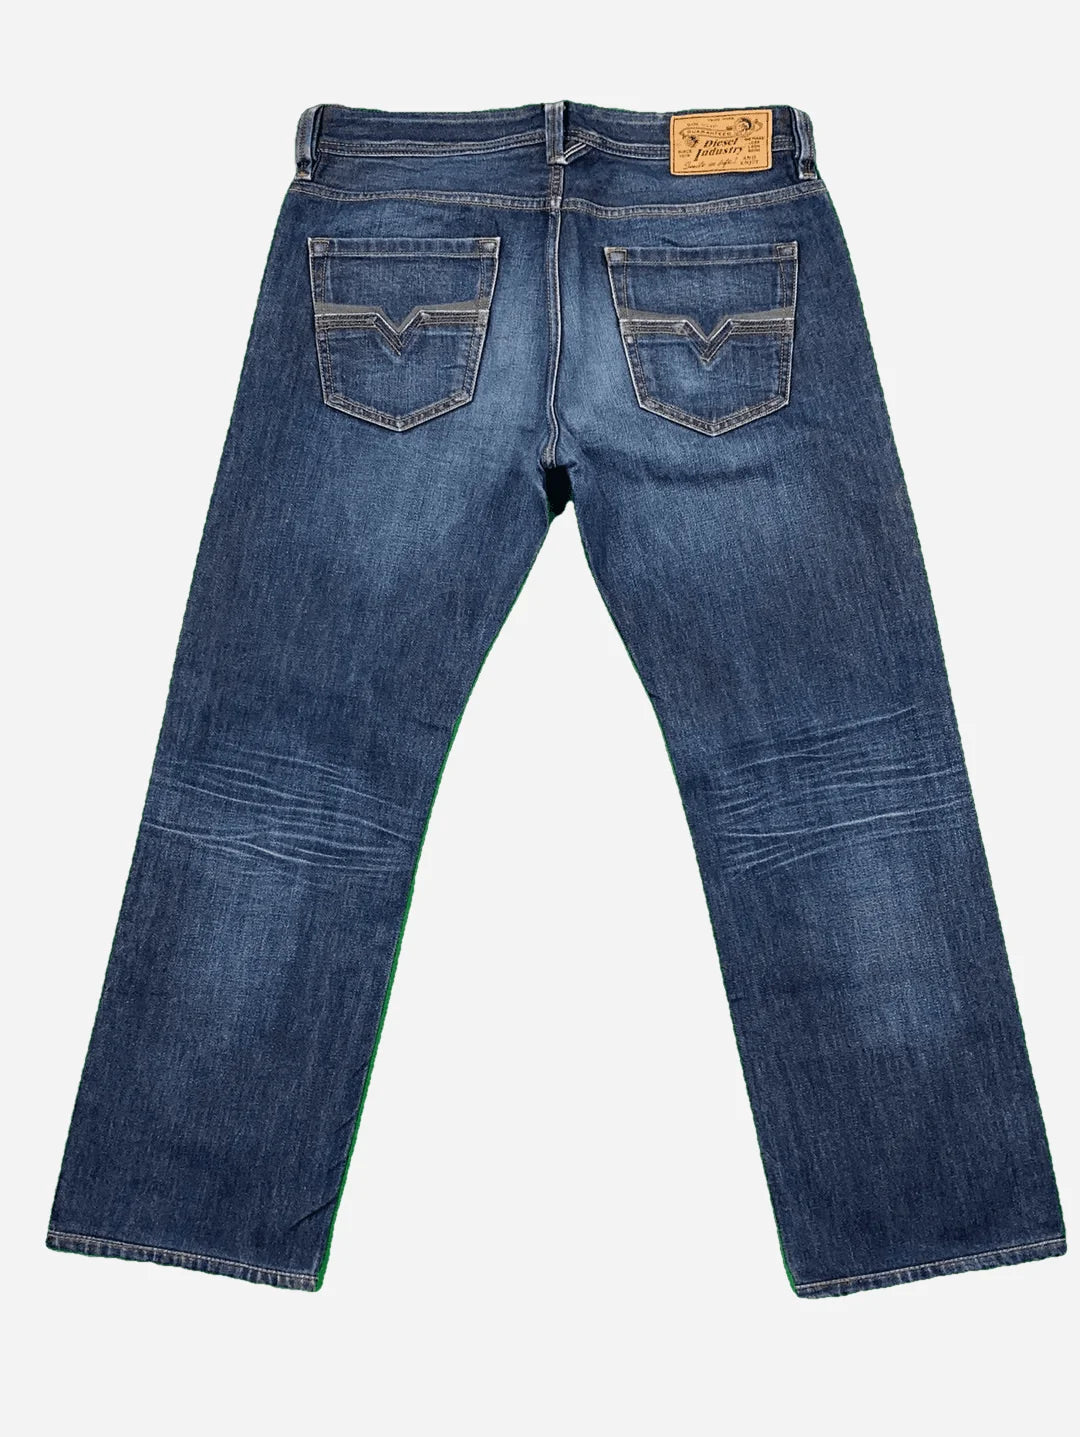 Diesel Larkee Jeans 34/32 (M)